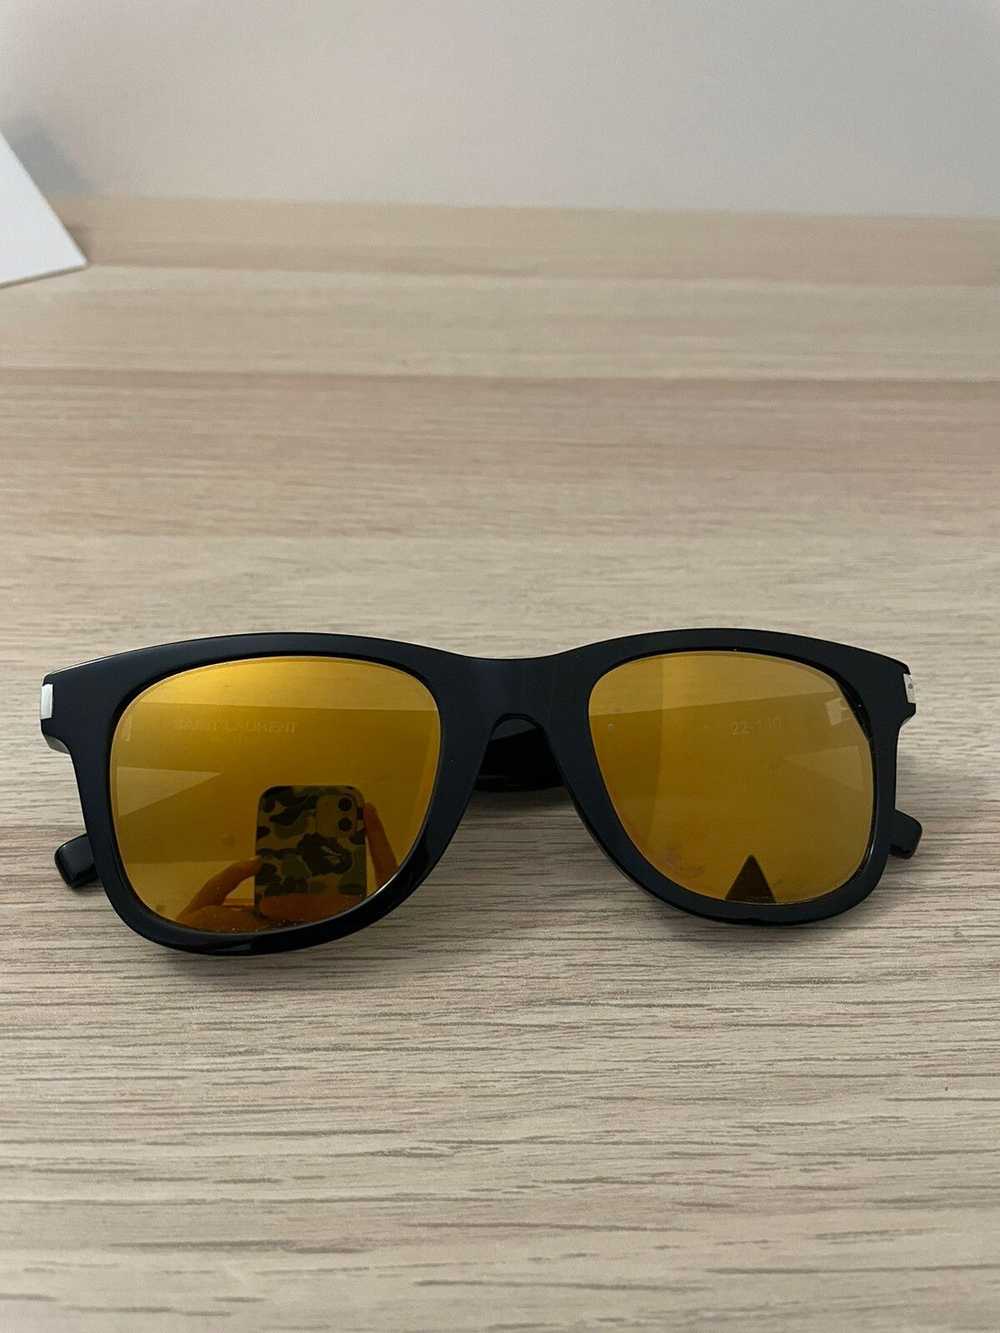 Yves Saint Laurent Saint Laurent Sunglasses - image 3